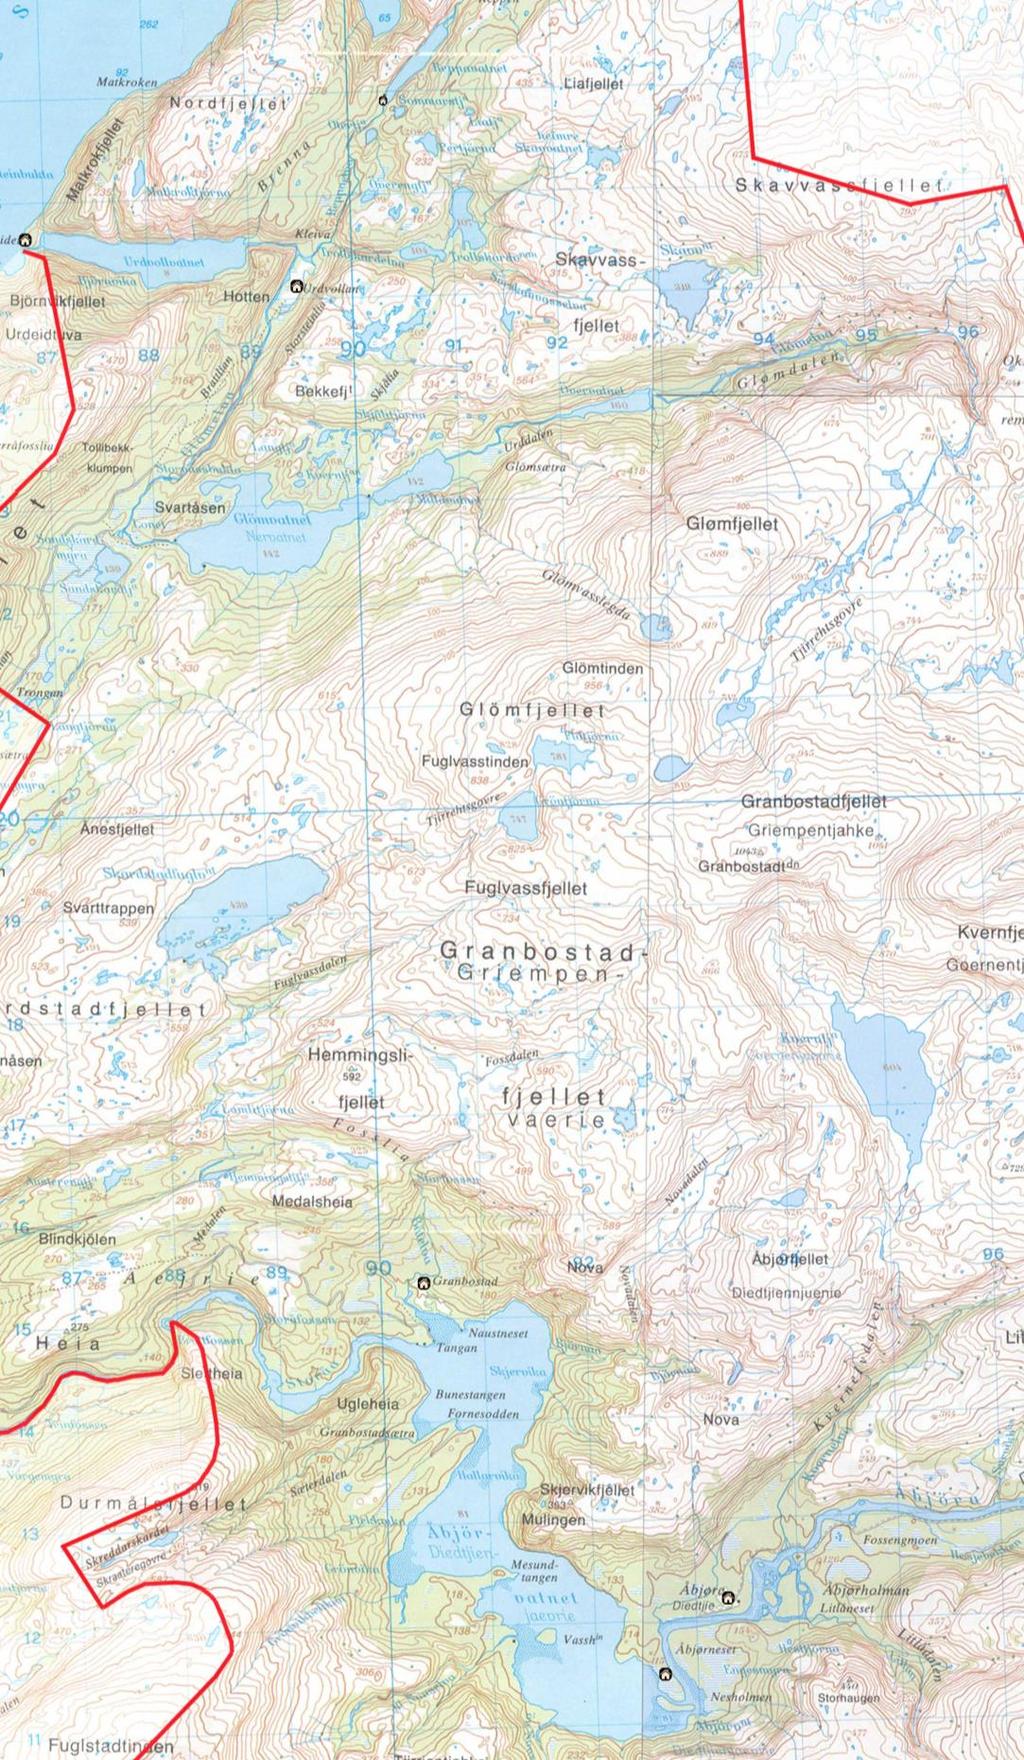 Glømmenområdet Med unntak av lakseførende del av Urvold og elven Åelva og Åbjøra, er også dette området